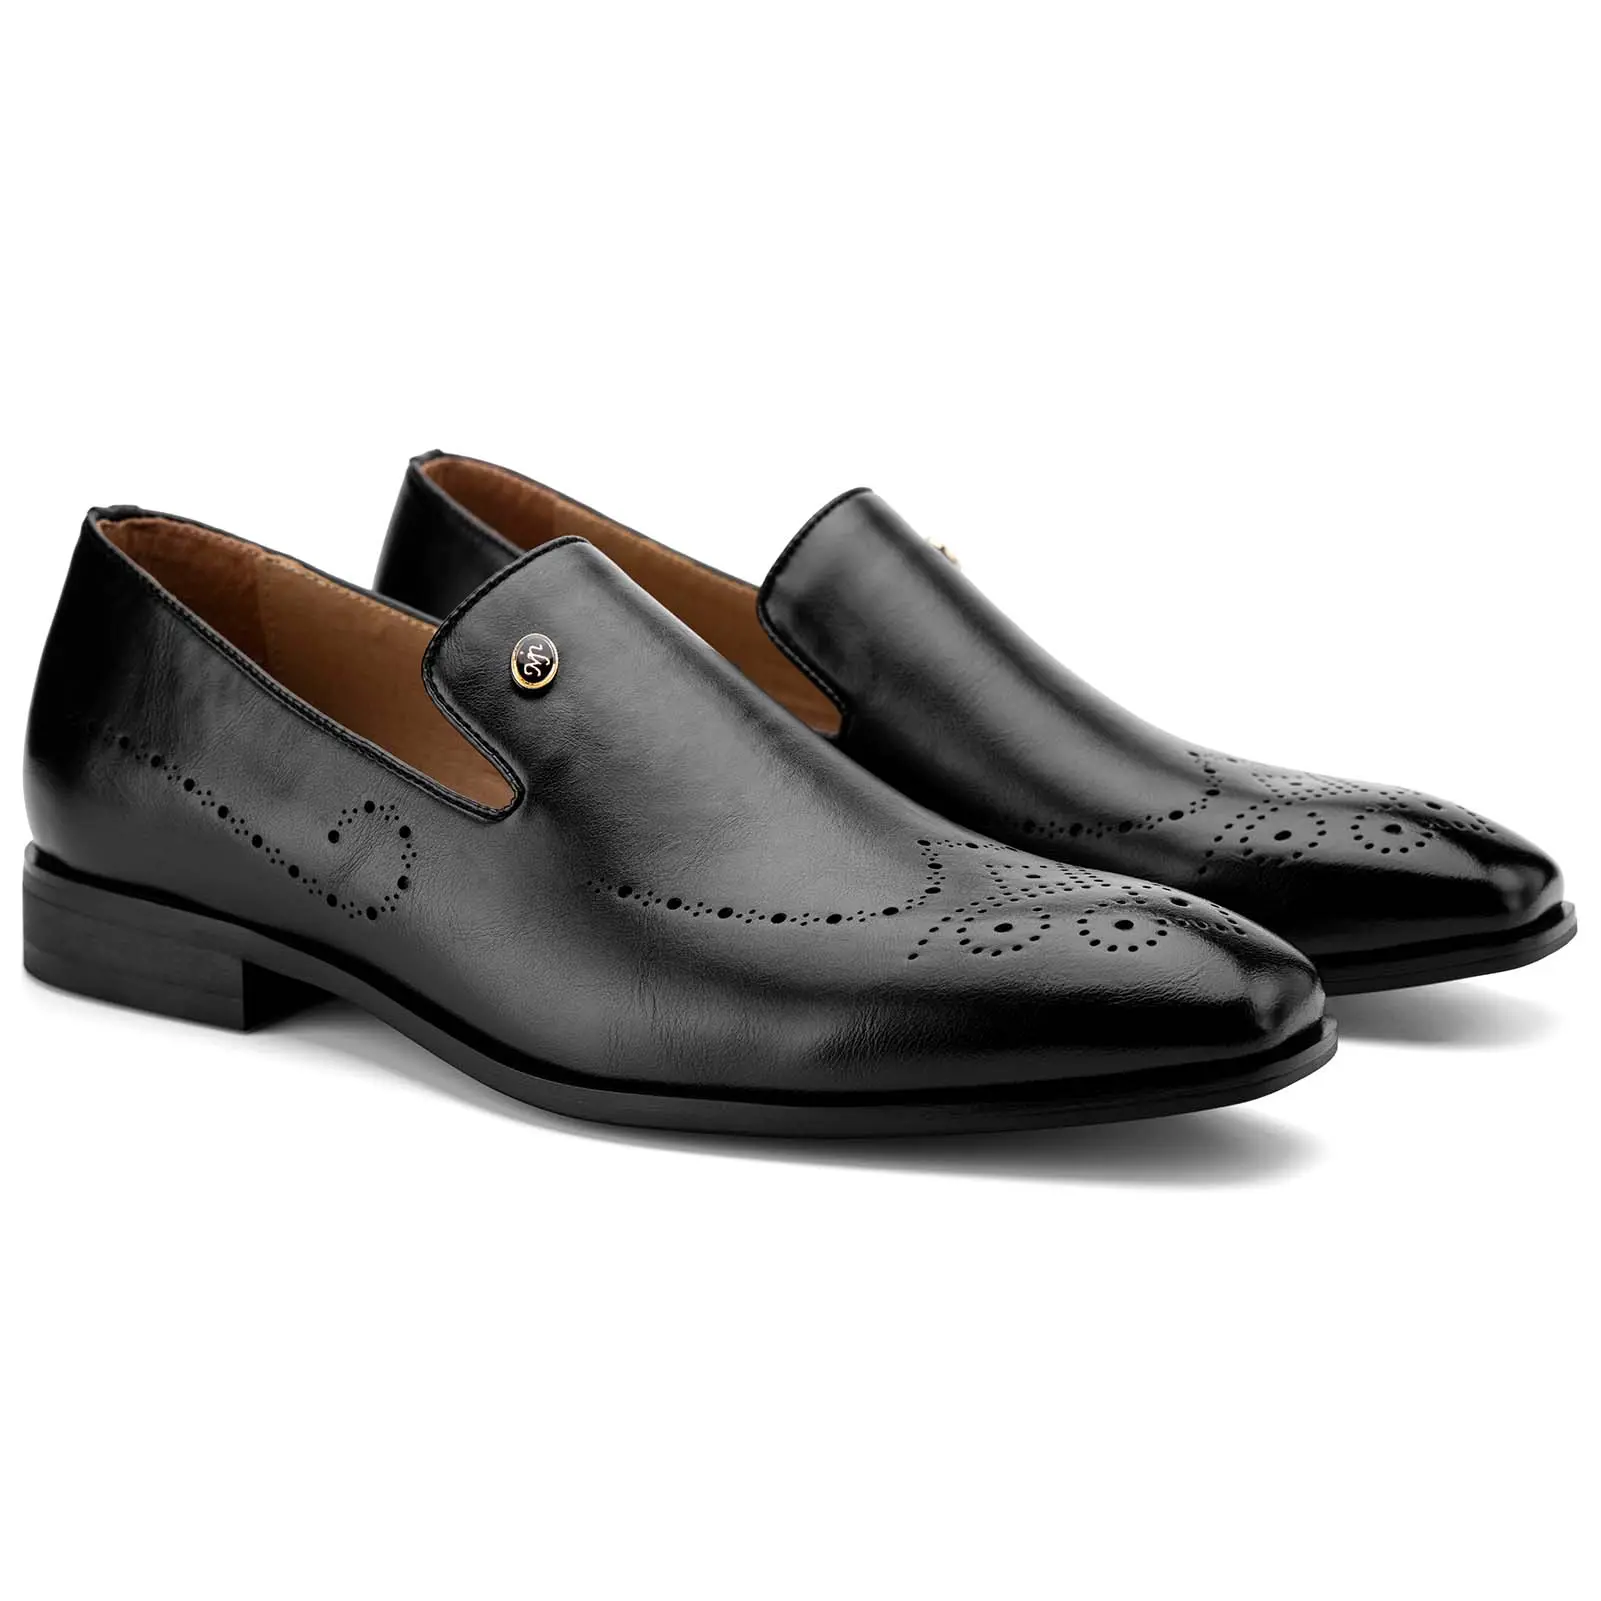 Men Black Dress Loafer Shoes Fashion Soft Black Leather Business Wedding Black Loafer Leather Shoes